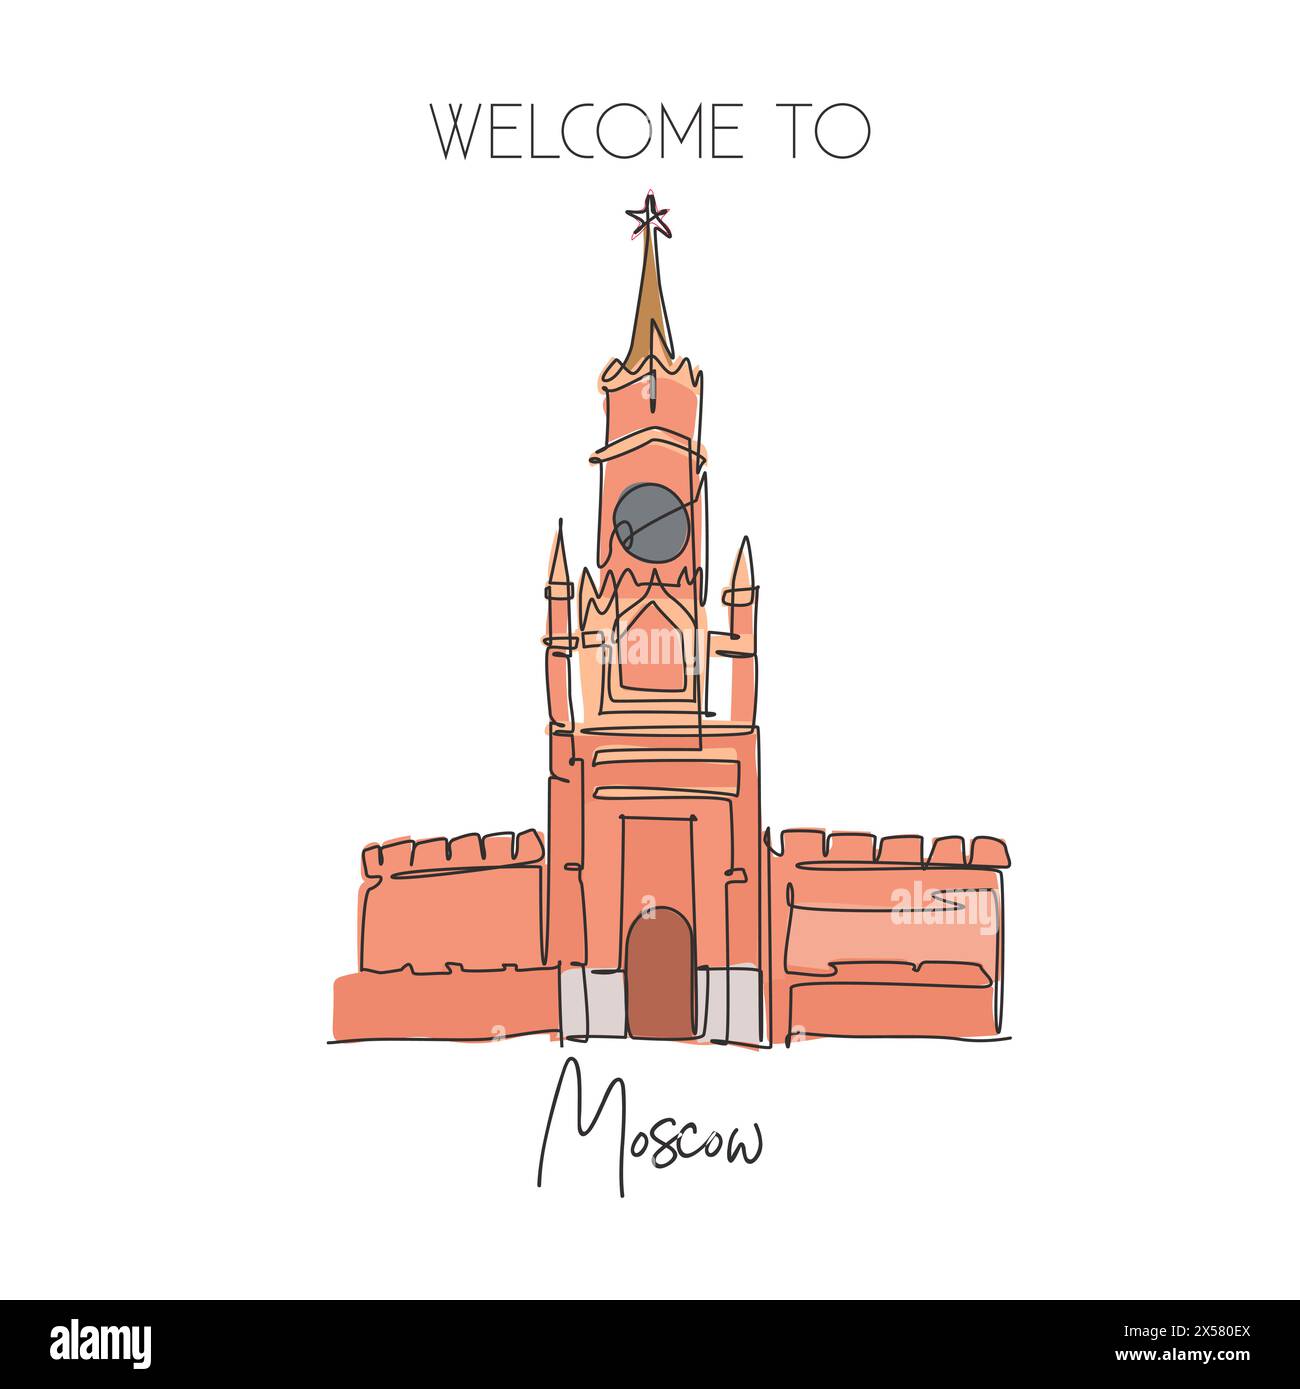 Eine einzelne Linie zeichnet das Wahrzeichen des Spasskaya Tower. Weltberühmter Ort in Moskau, Russland. Tourismusreise Postkarte Wanddekor Posterdruck Konzept. Moder Stock Vektor